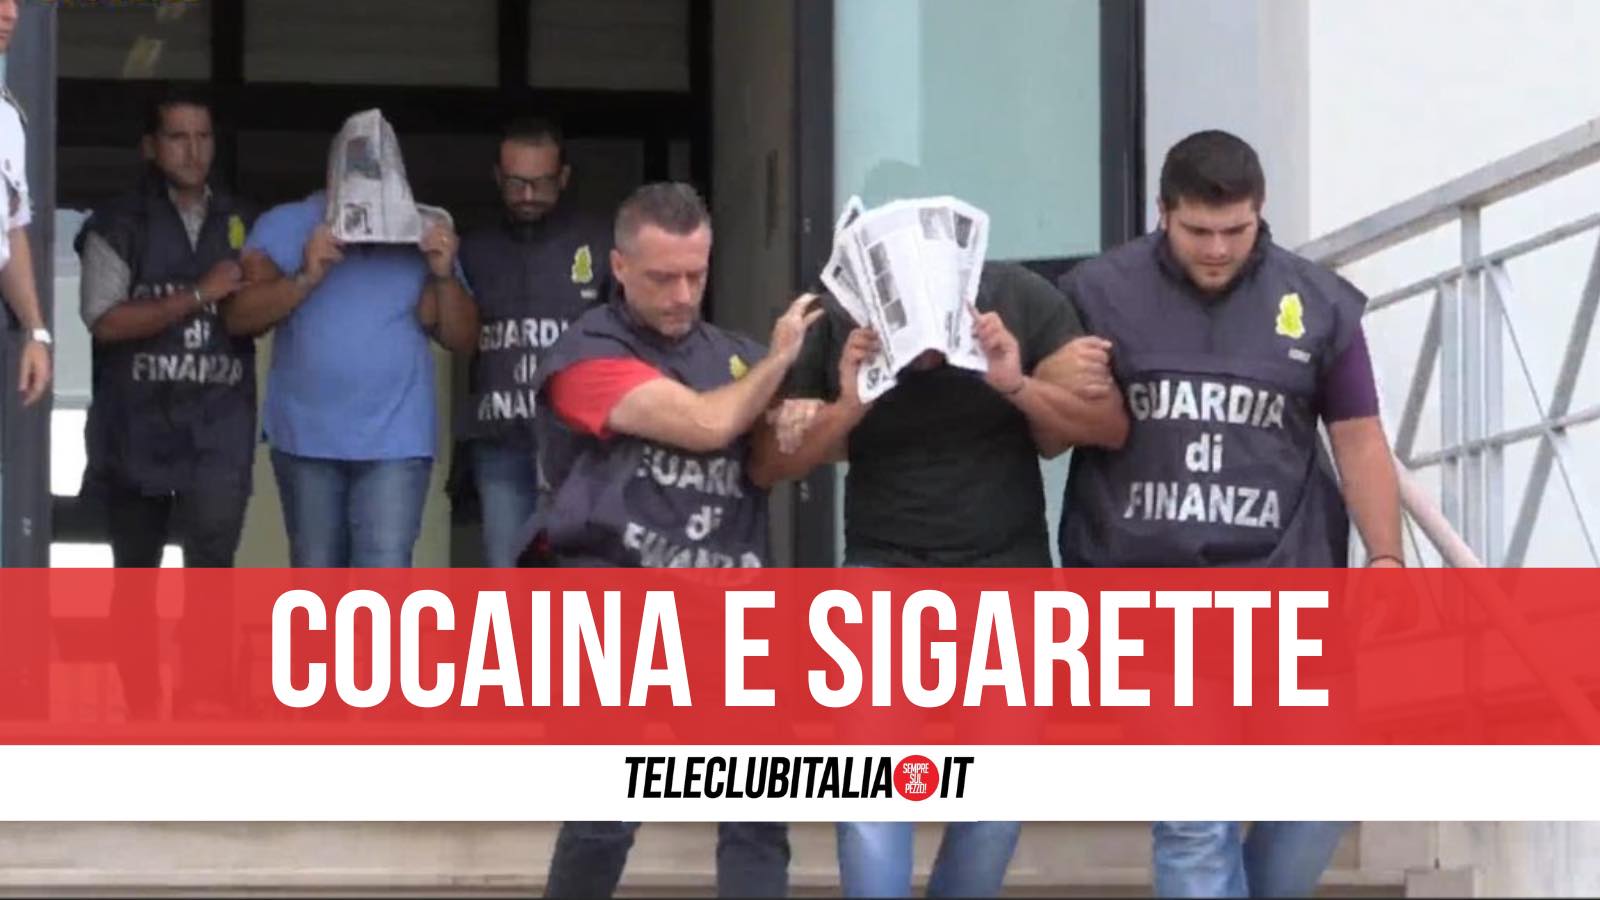 arresti napoli sigarette cocaina 12 nomi